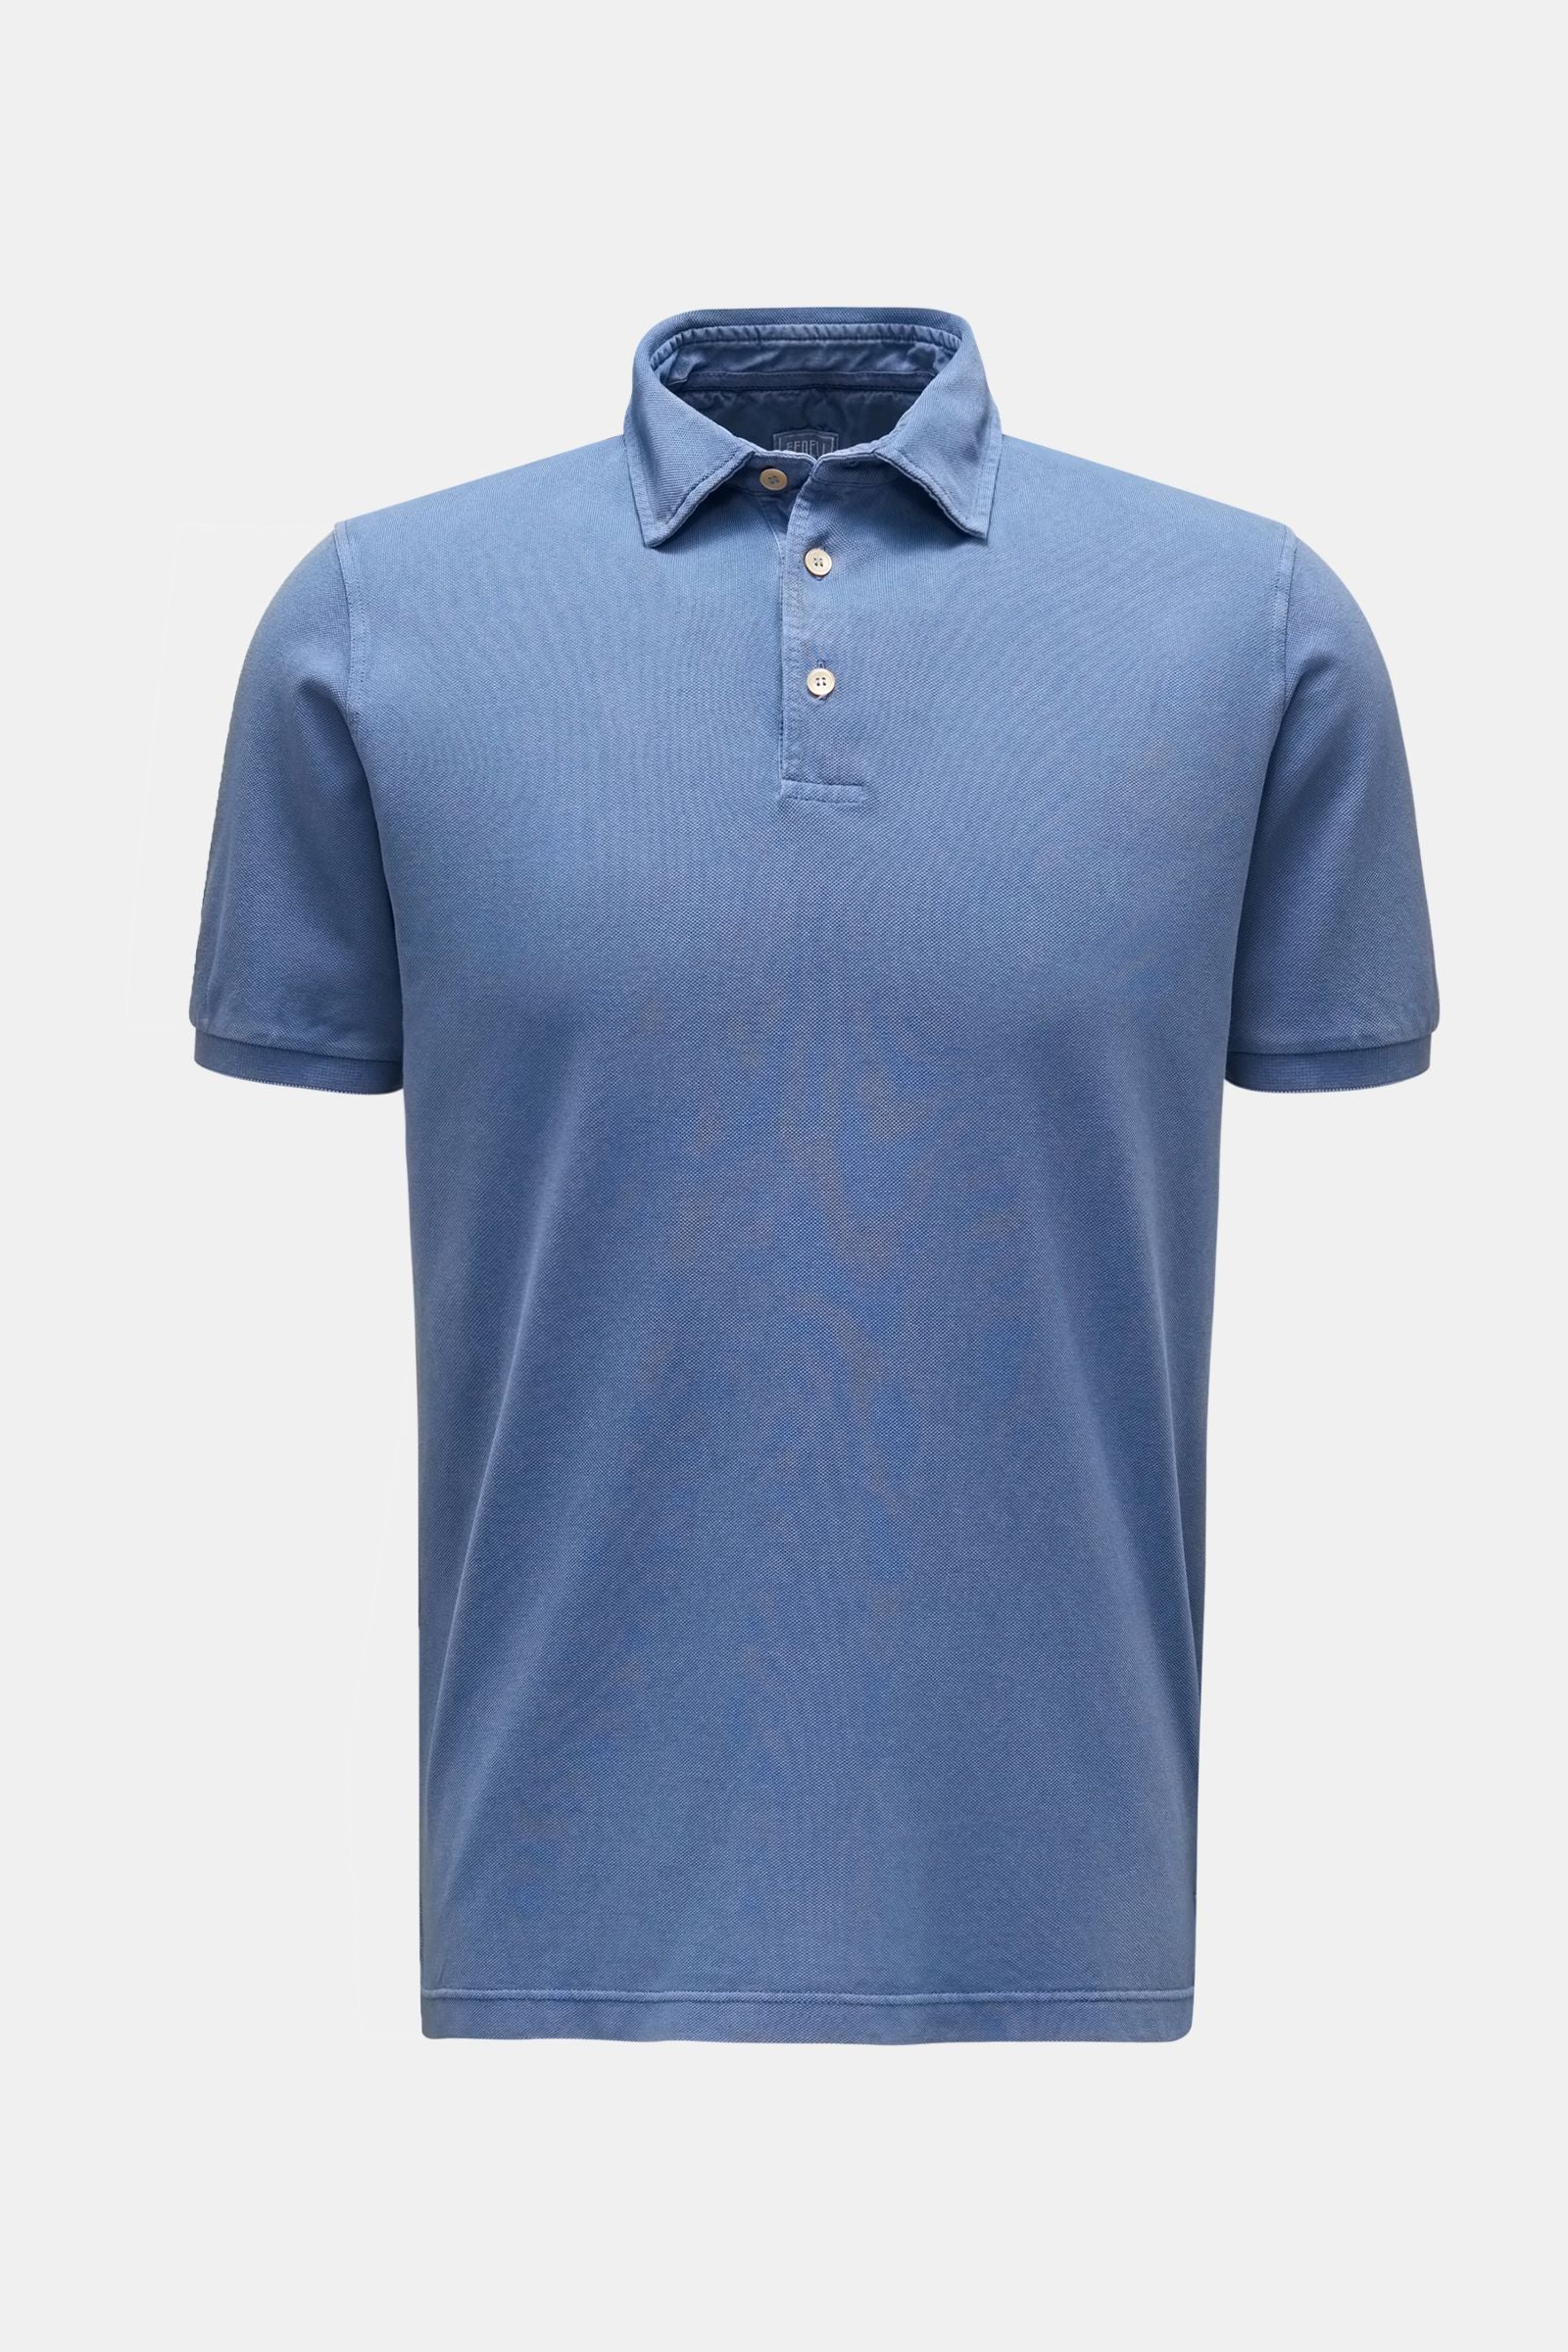 Fedeli Fedeli Polo Shirt - Raf blauw